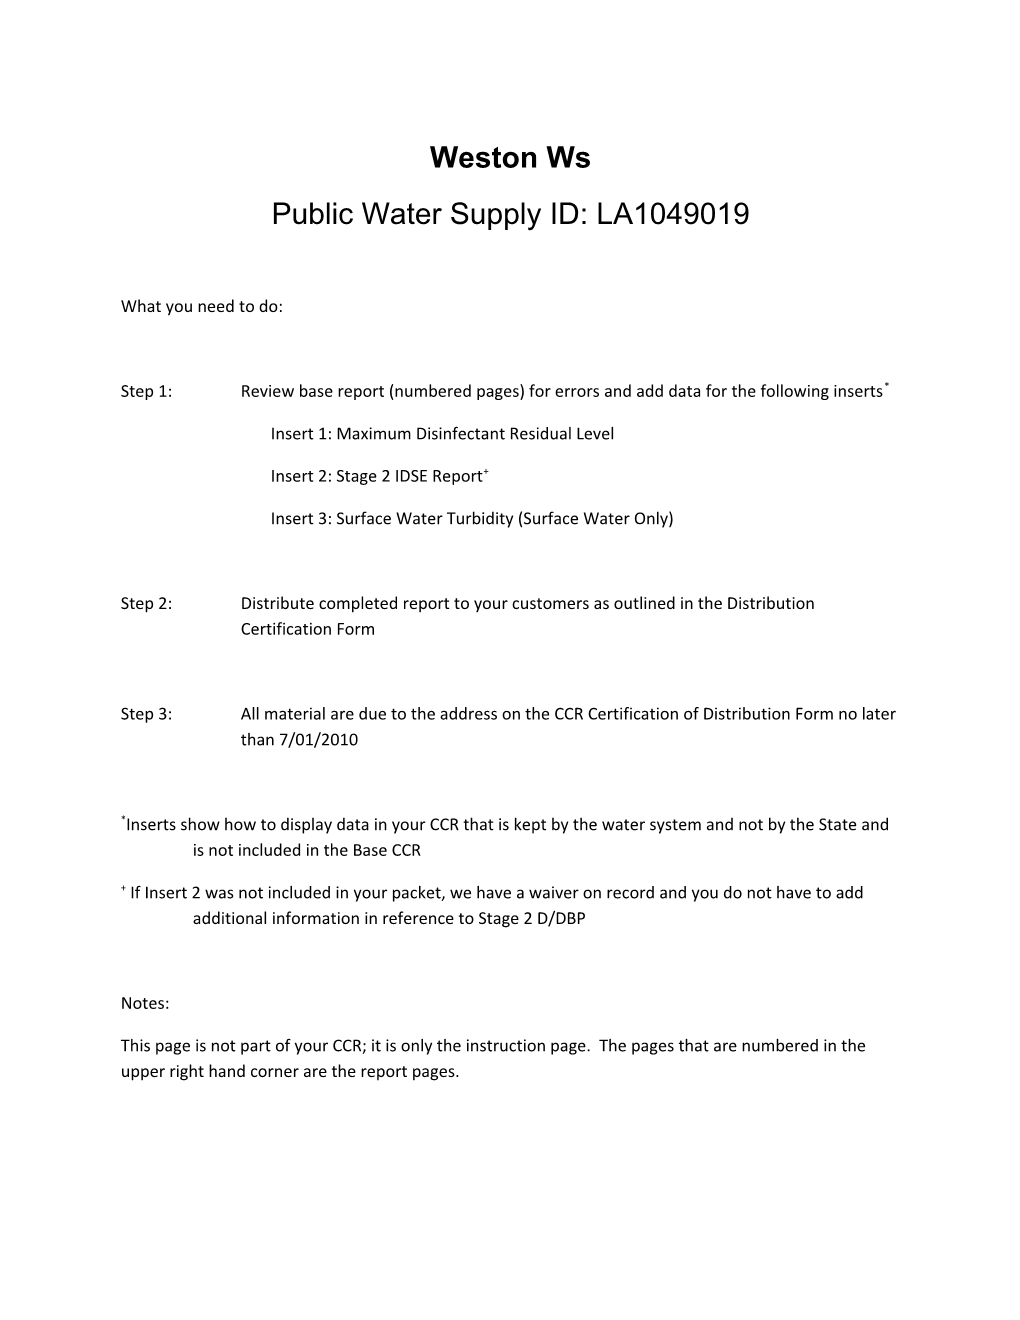 Public Water Supply ID: LA1049019